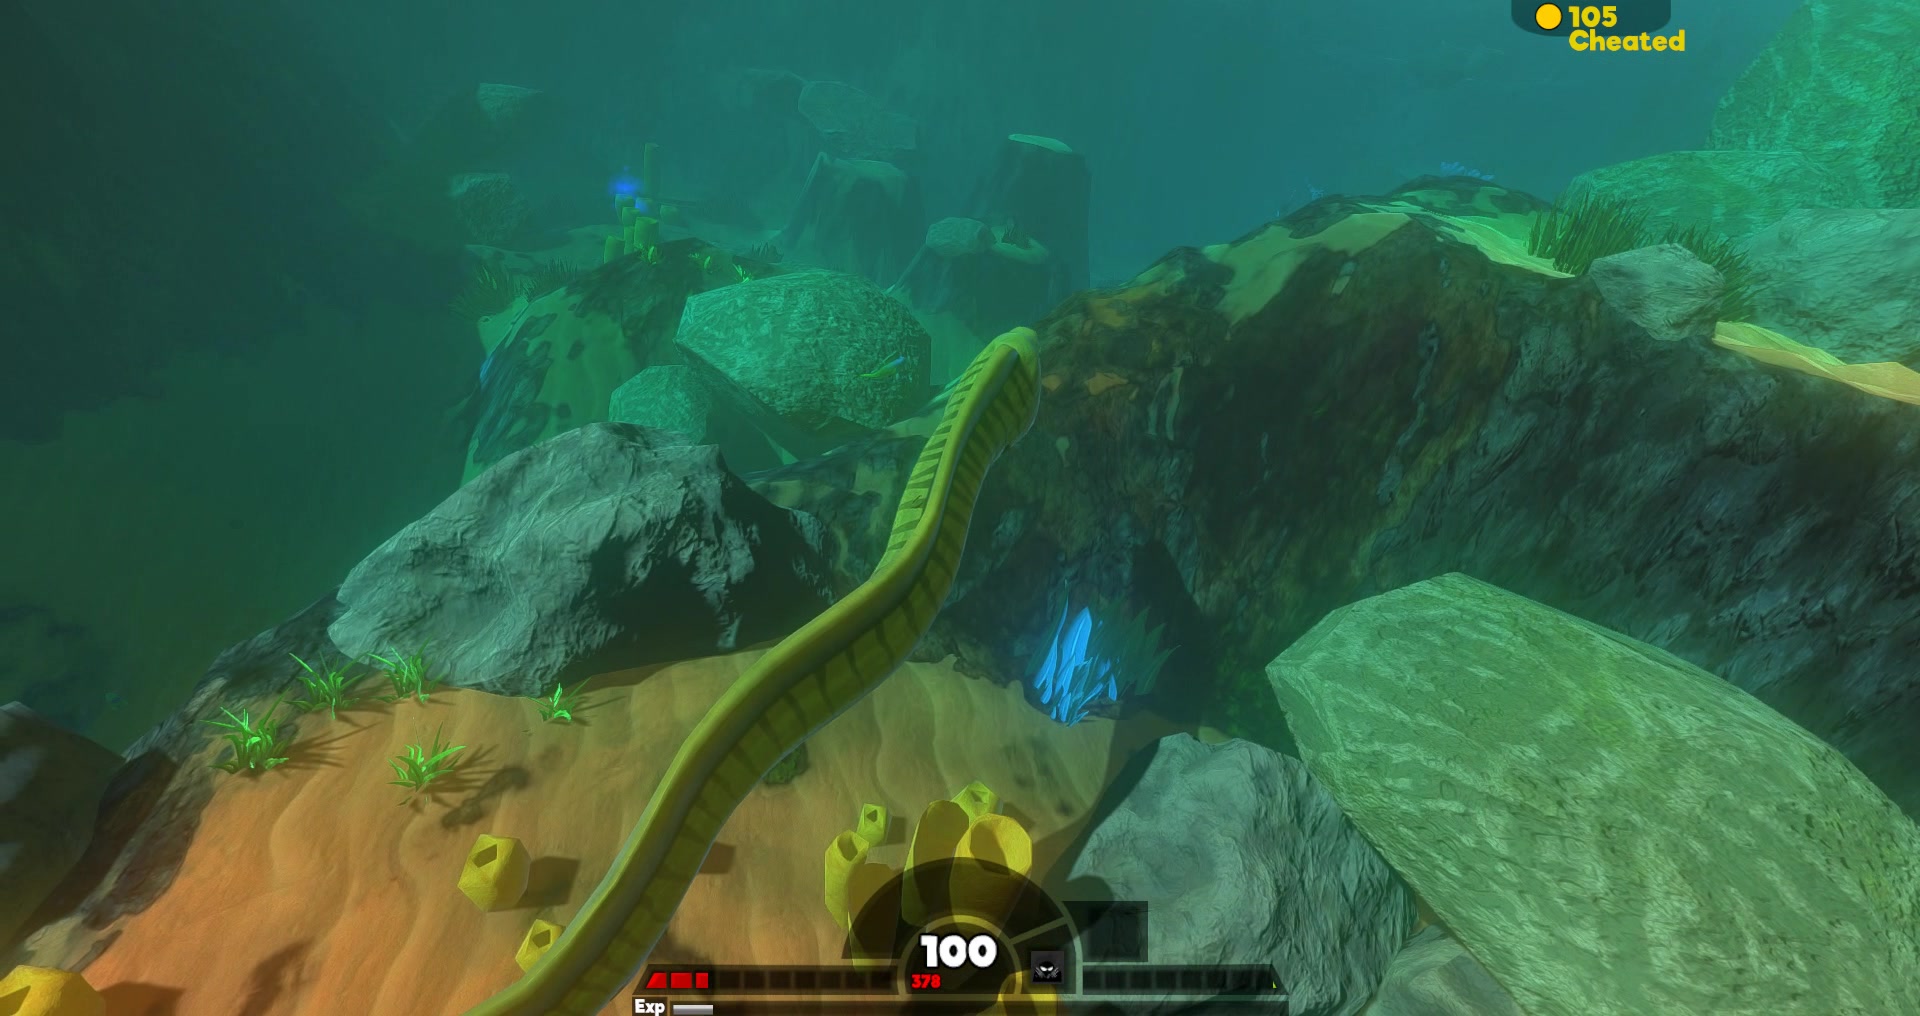 恋墨游戏解说:《海底大猎杀》之剑尾鱼的那些精彩合集